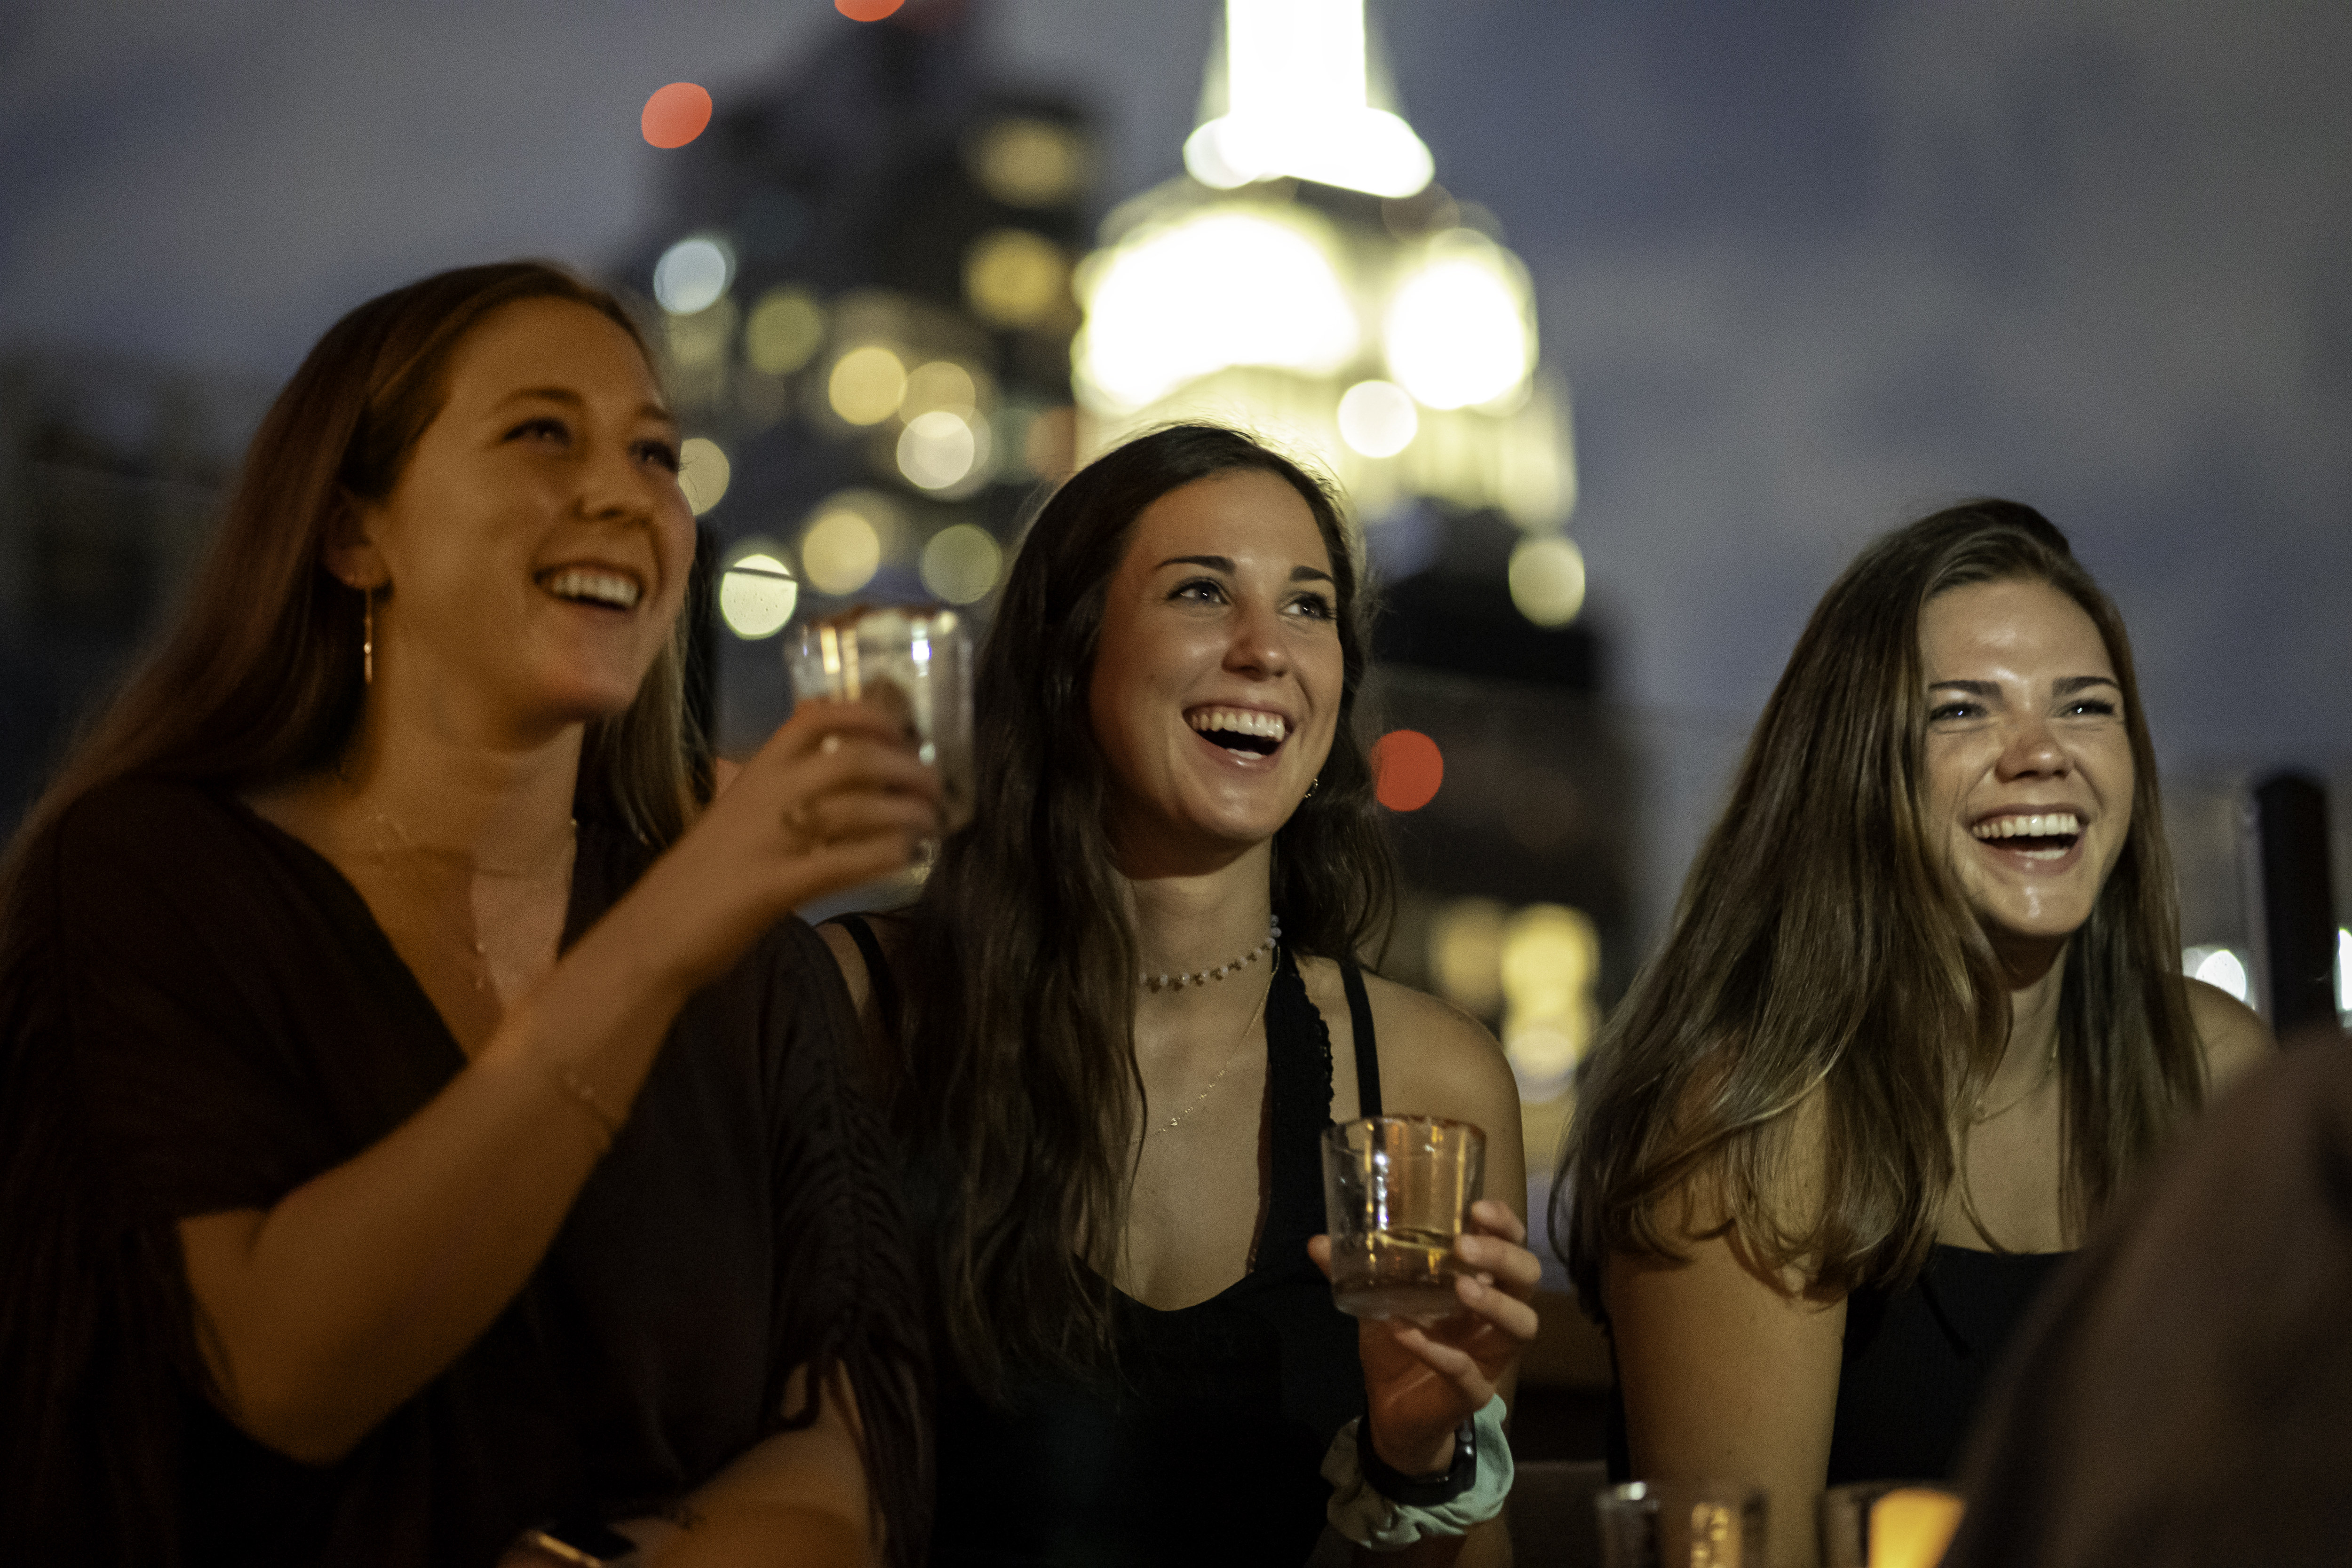 Ladies enjoying drinks at a bar